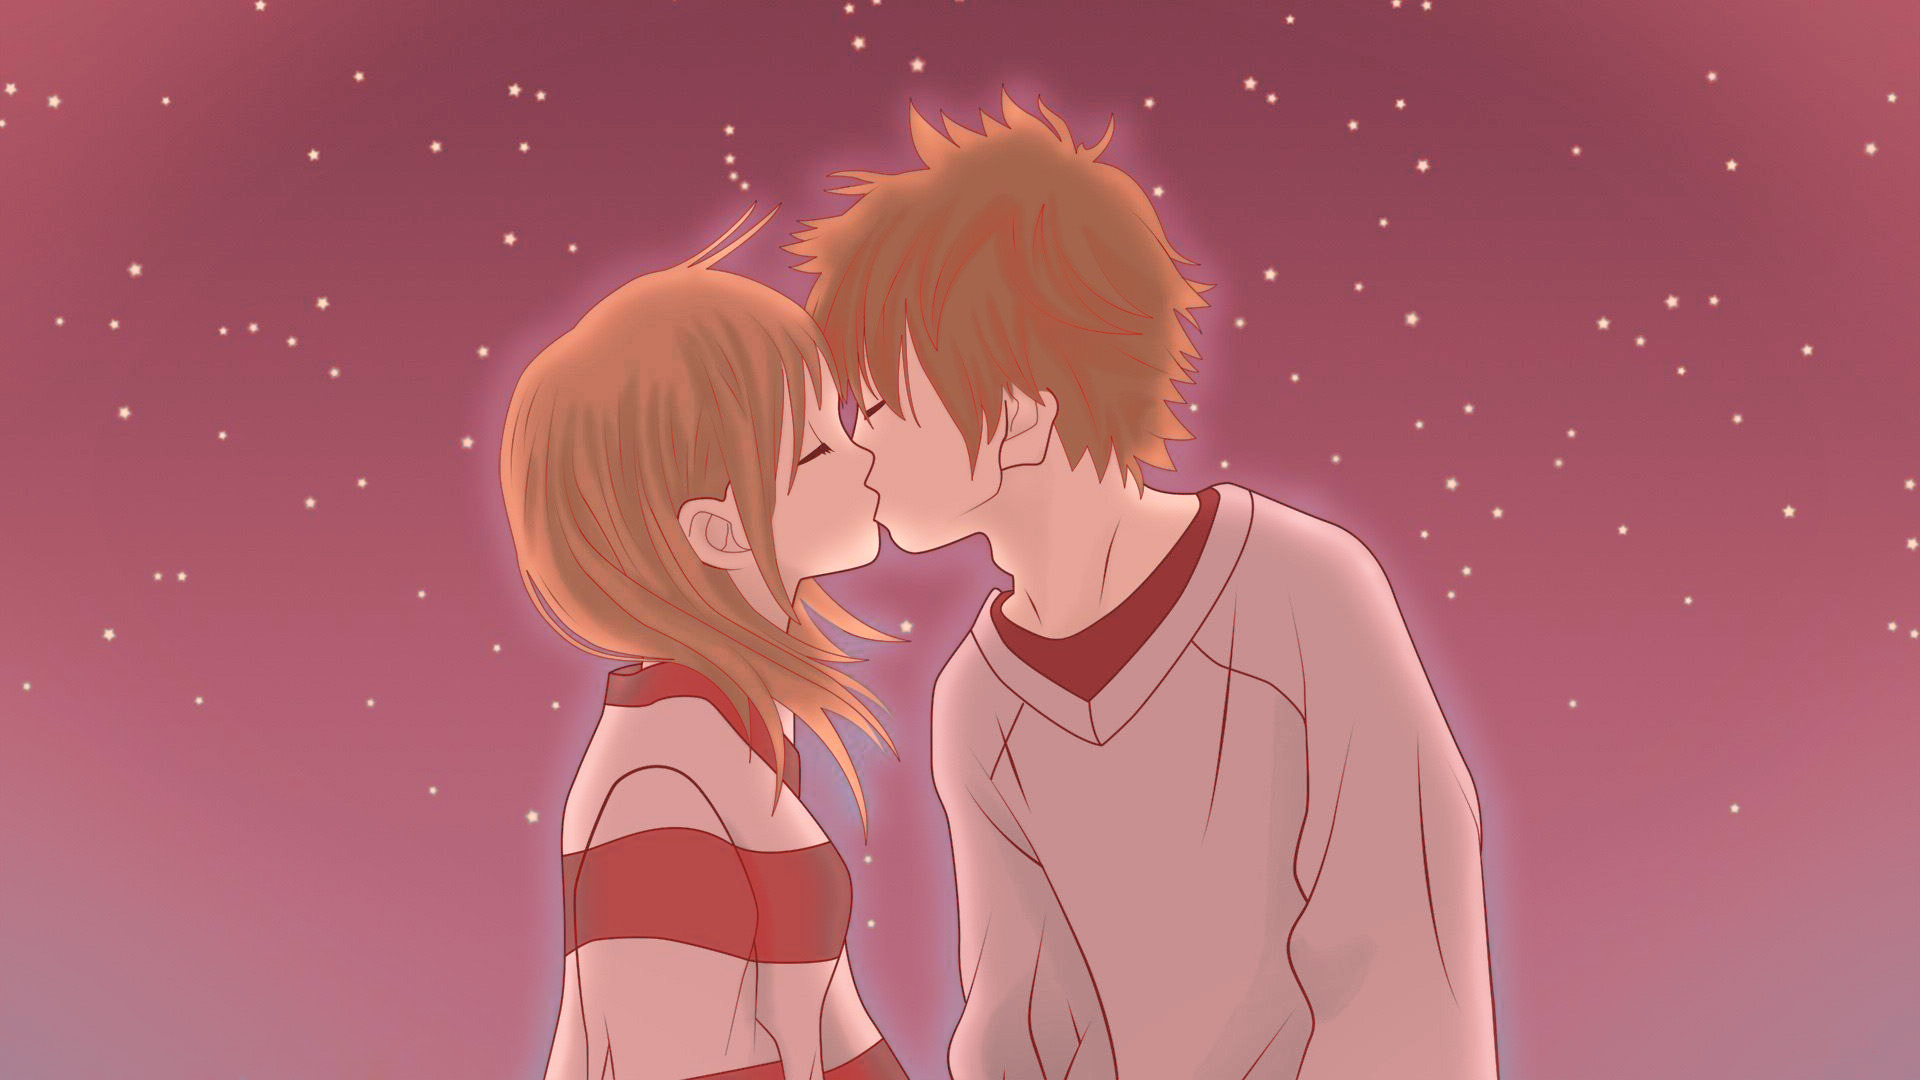 Cute Anime Couple Hd Wallpapers Pixelstalknet